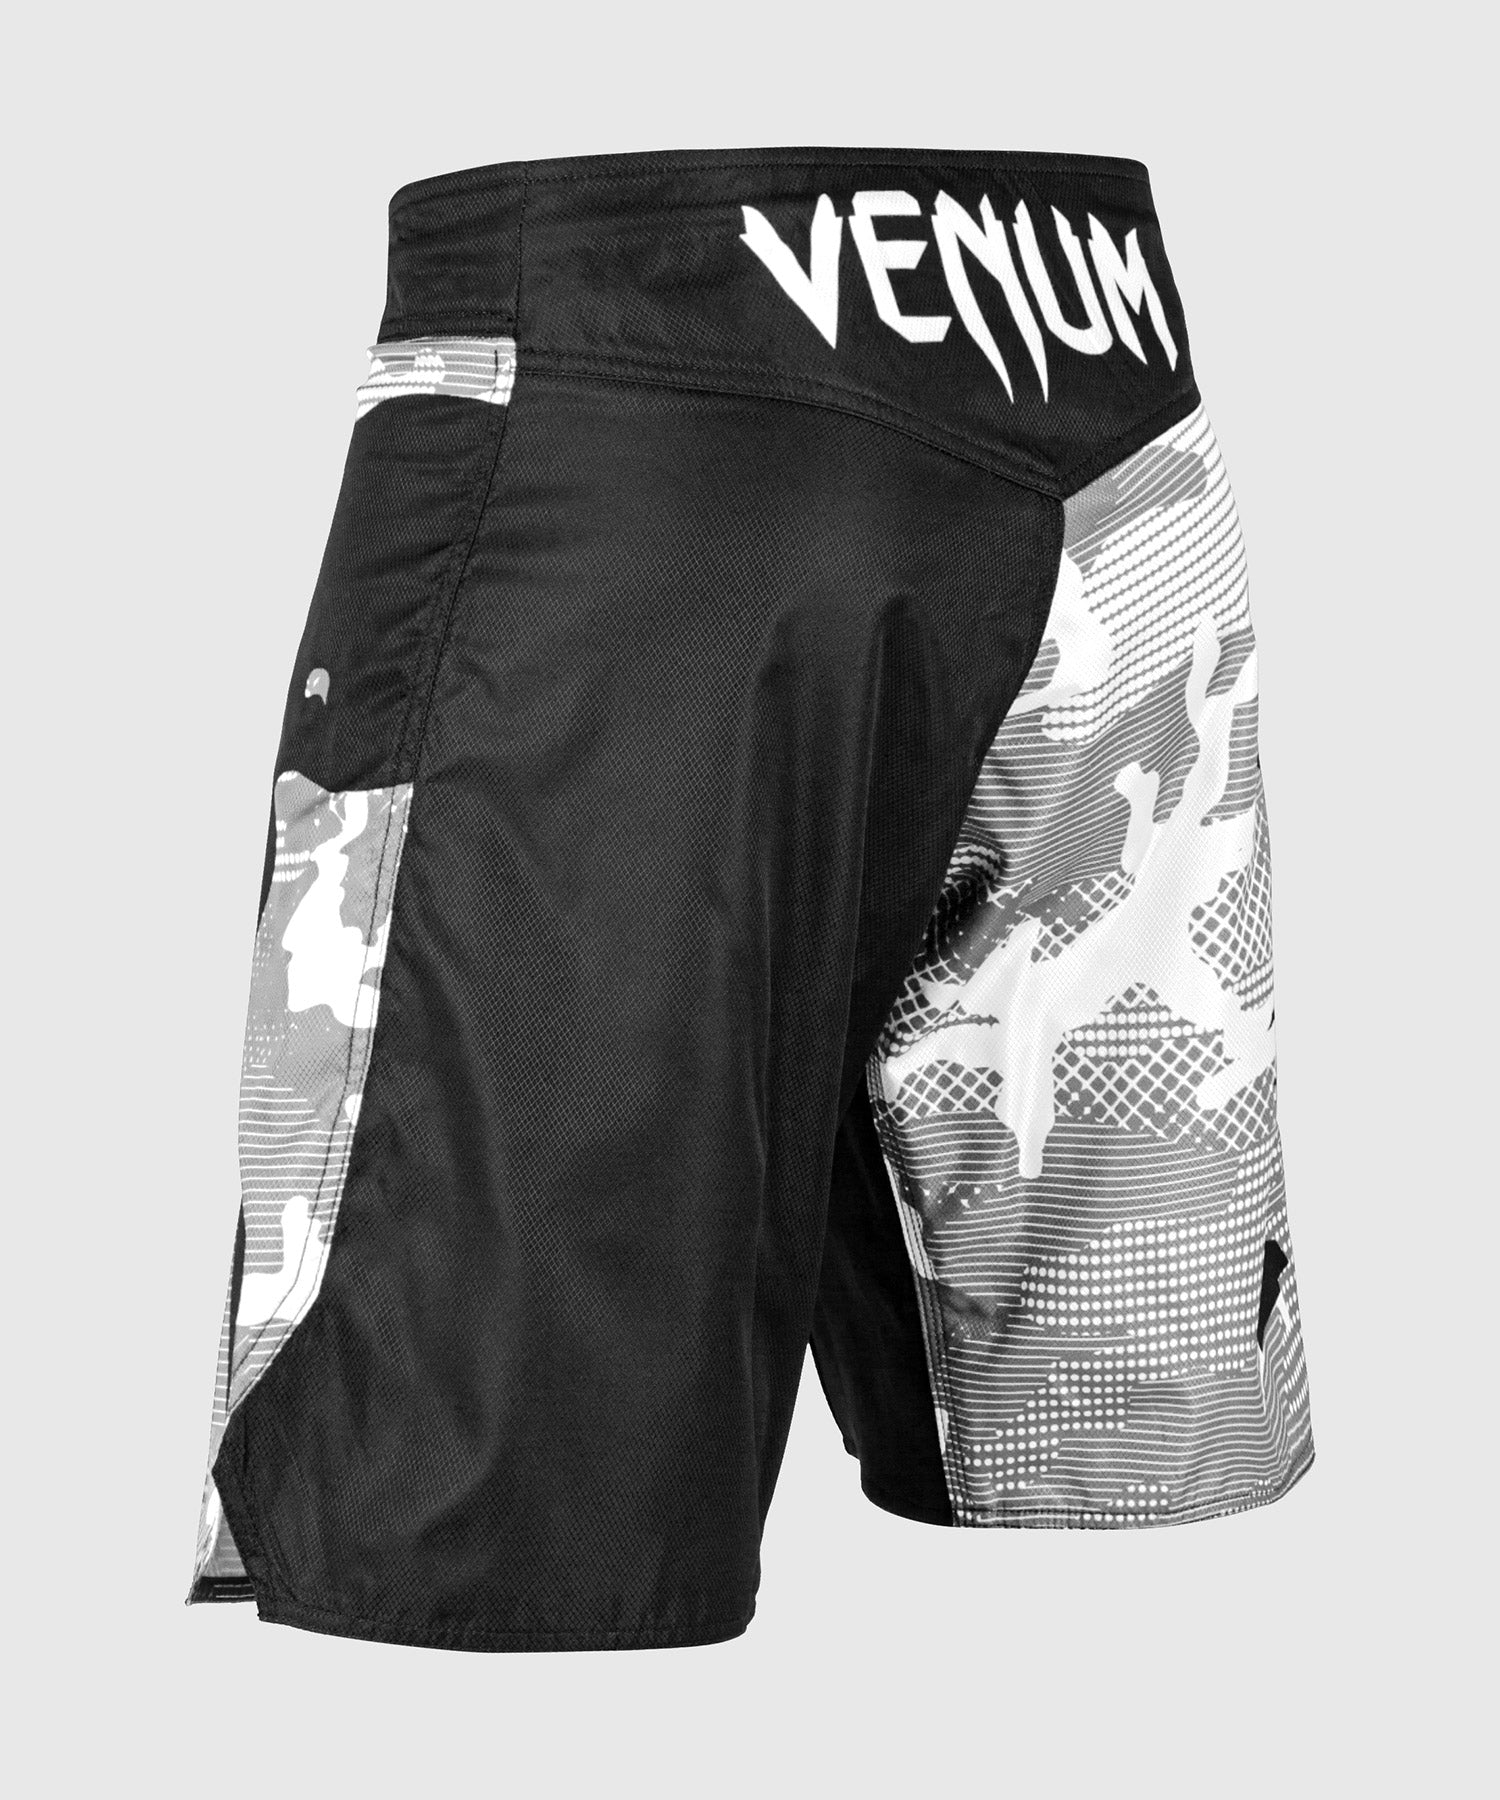 Venum Light 3.0 Fightshorts - Urban Camo - Venum Asia